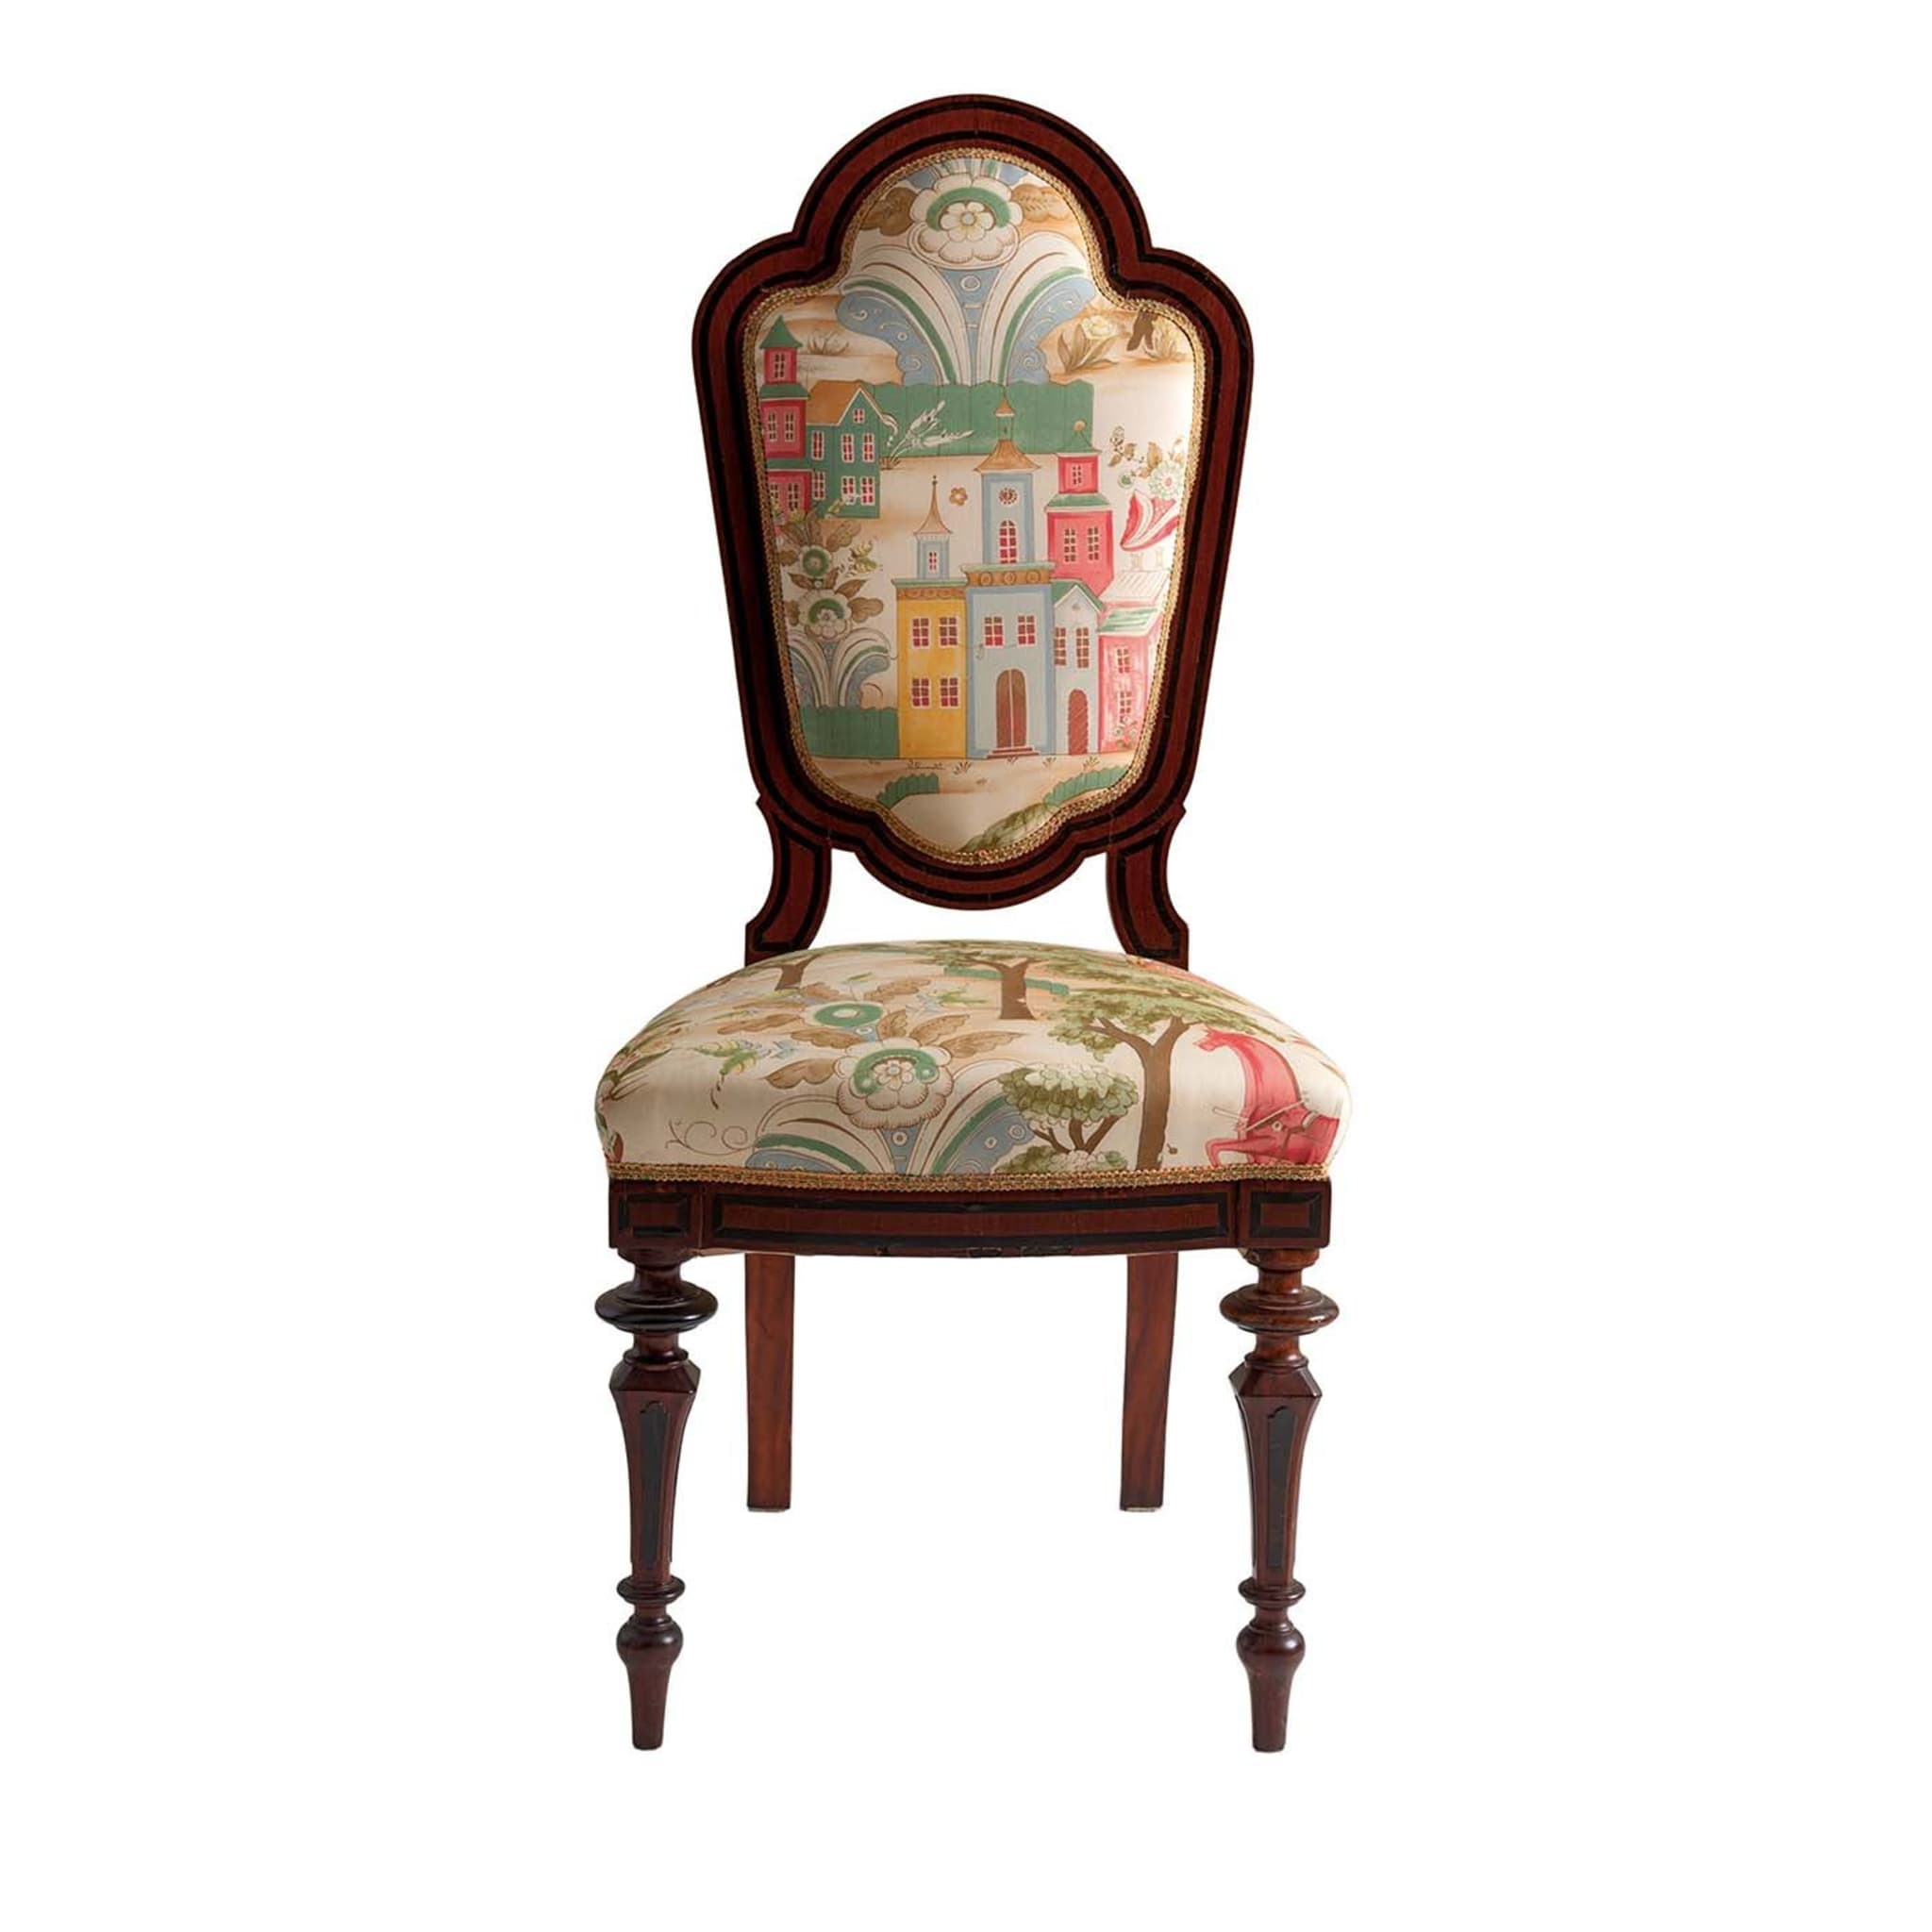 Sedute Esaurite Collection Chair #6 - Main view